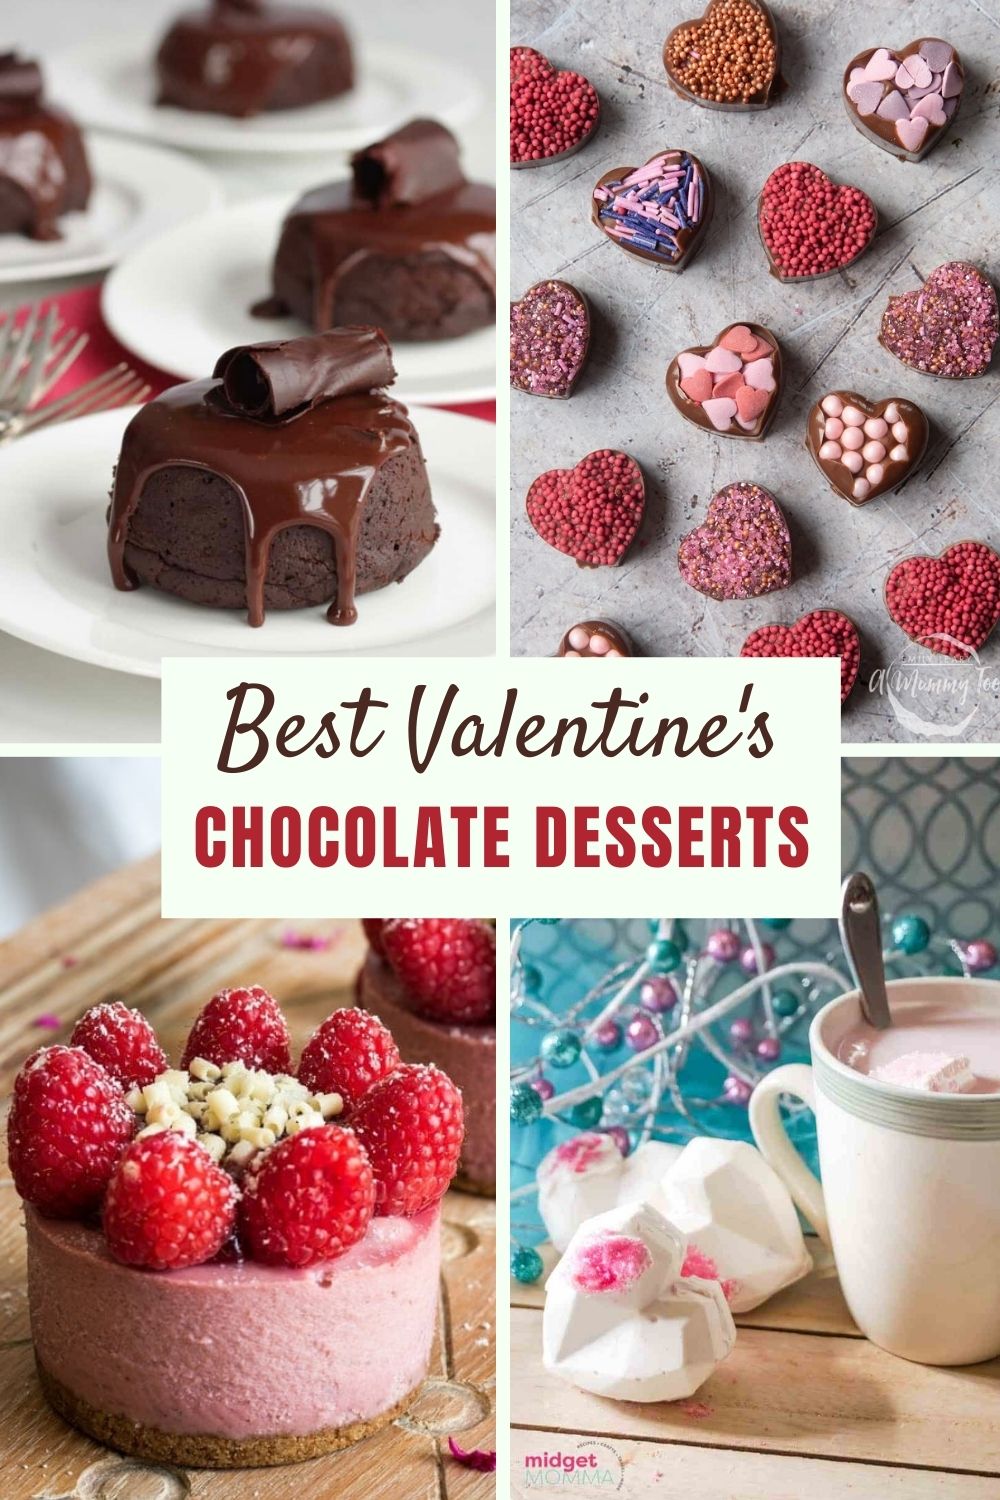 Best Chocolate Desserts for Valentines